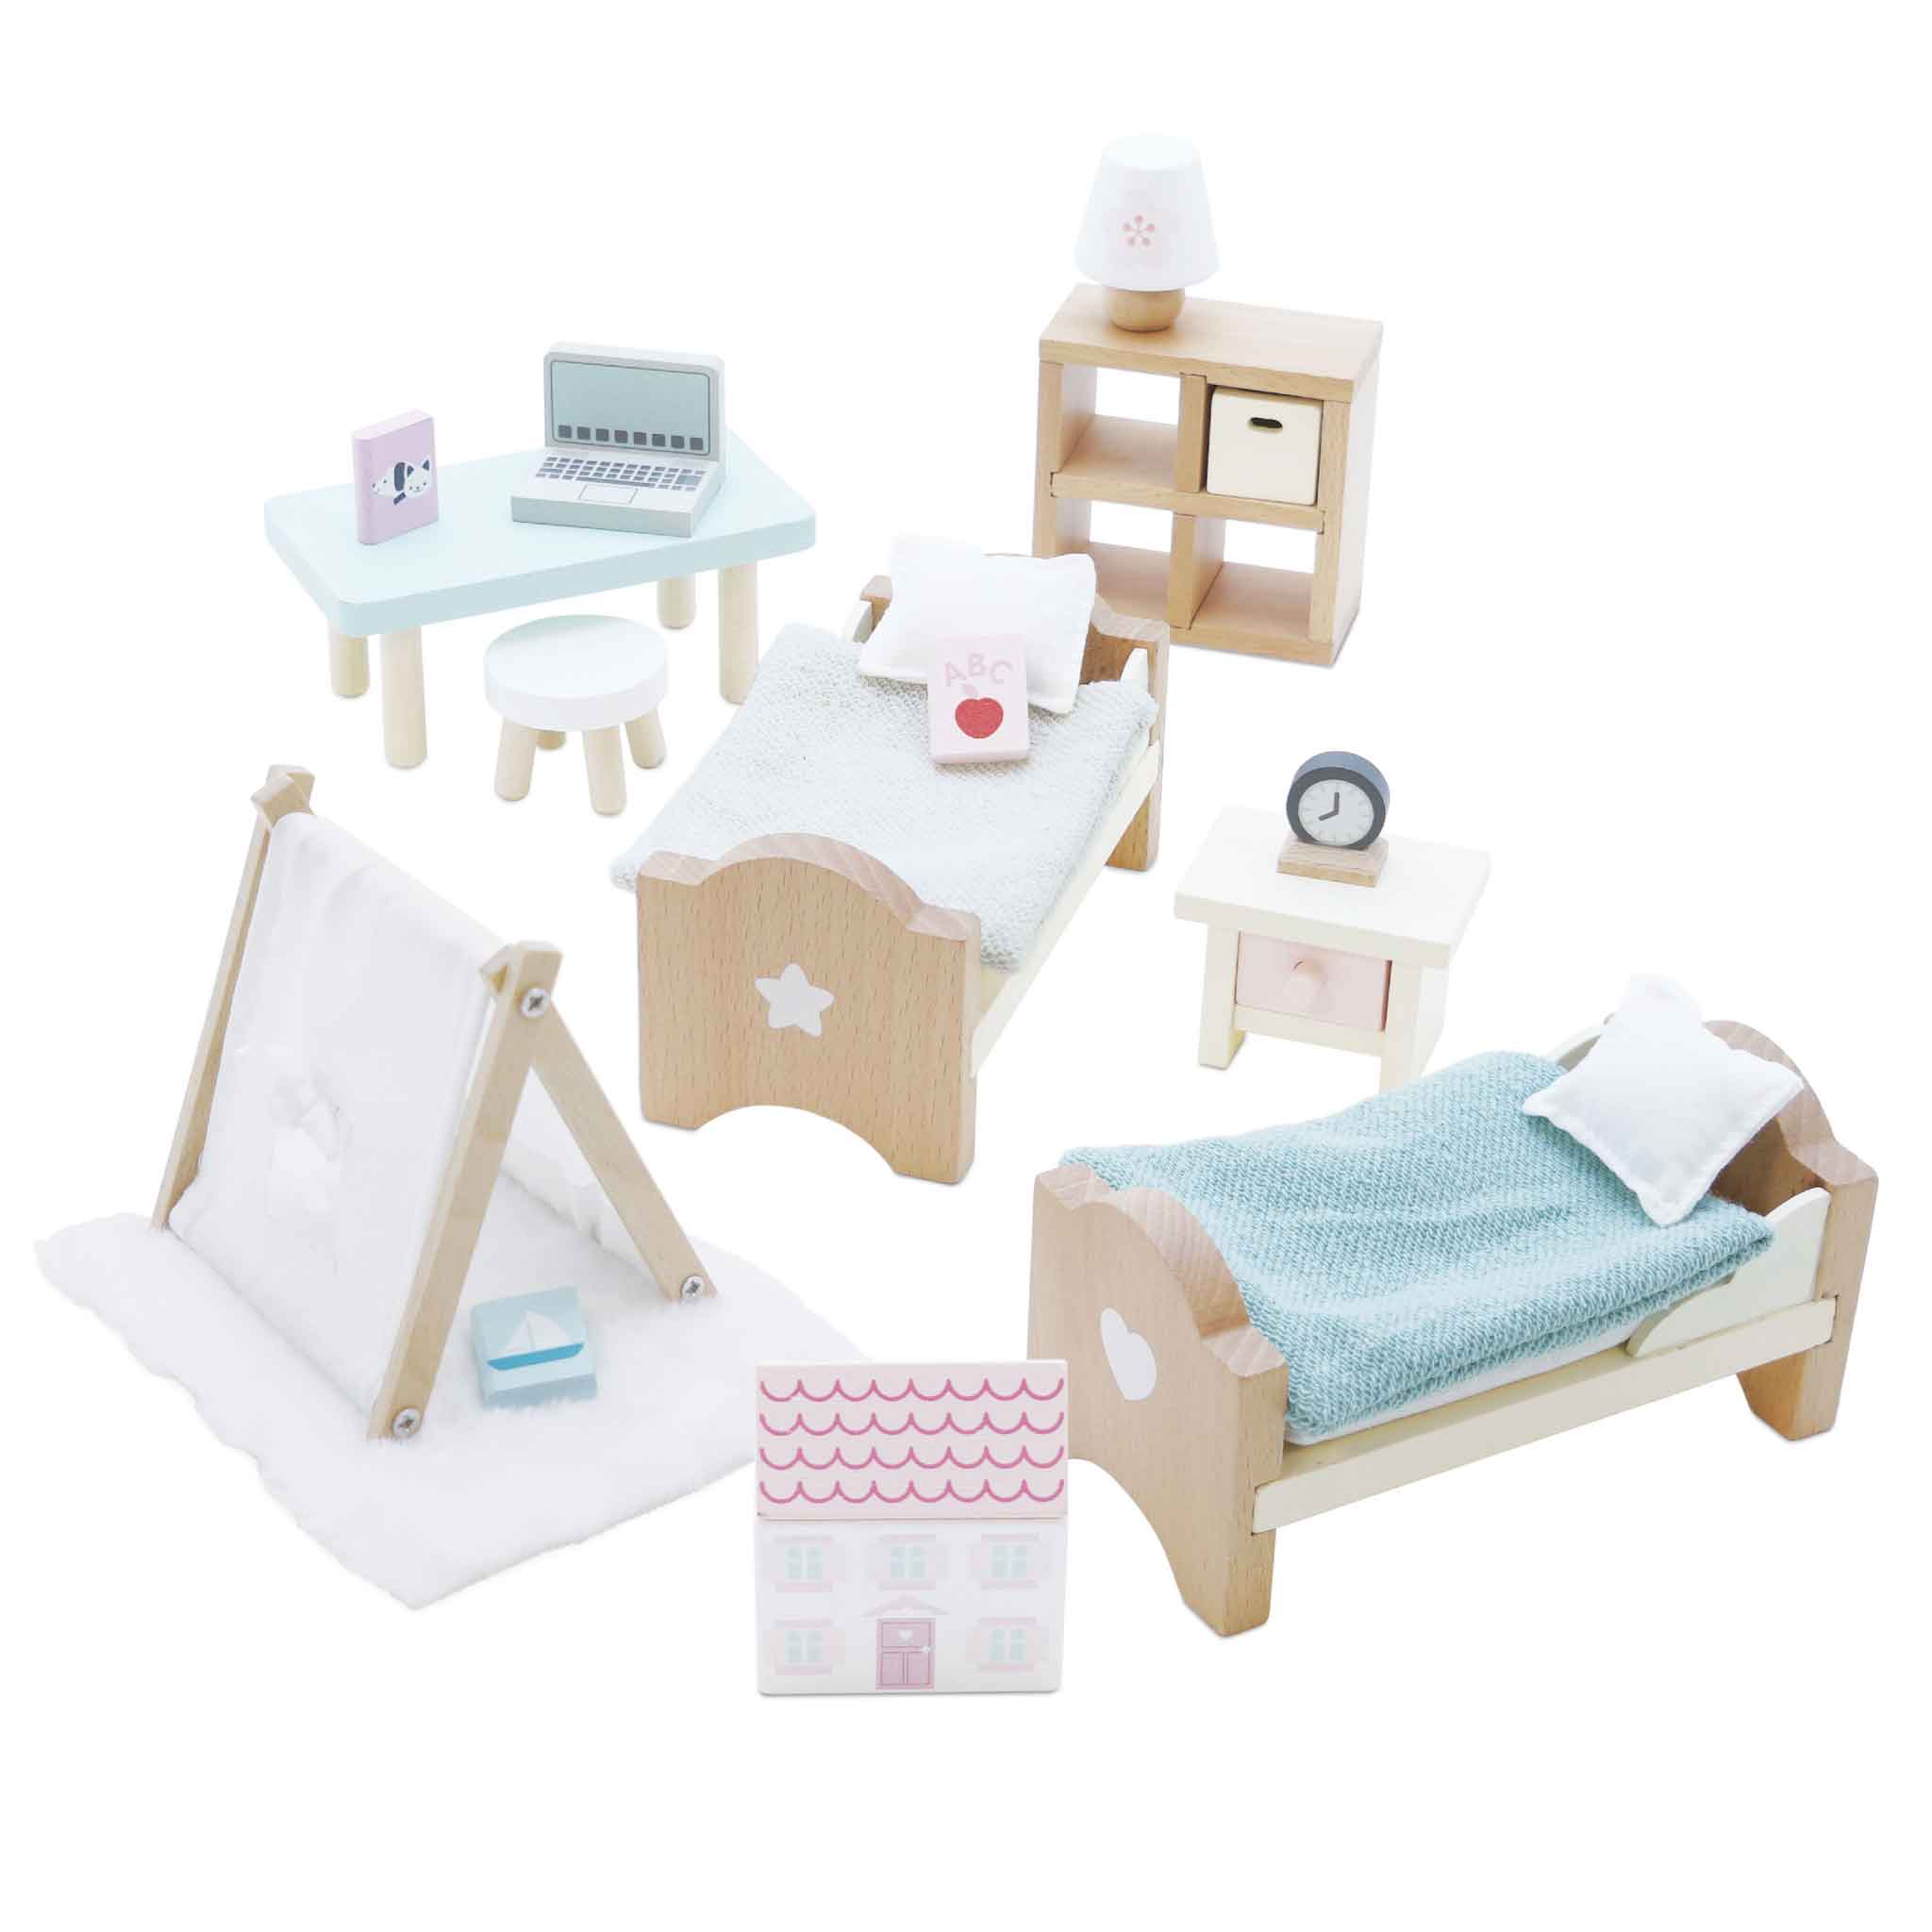 Doll House Children's Bedroom